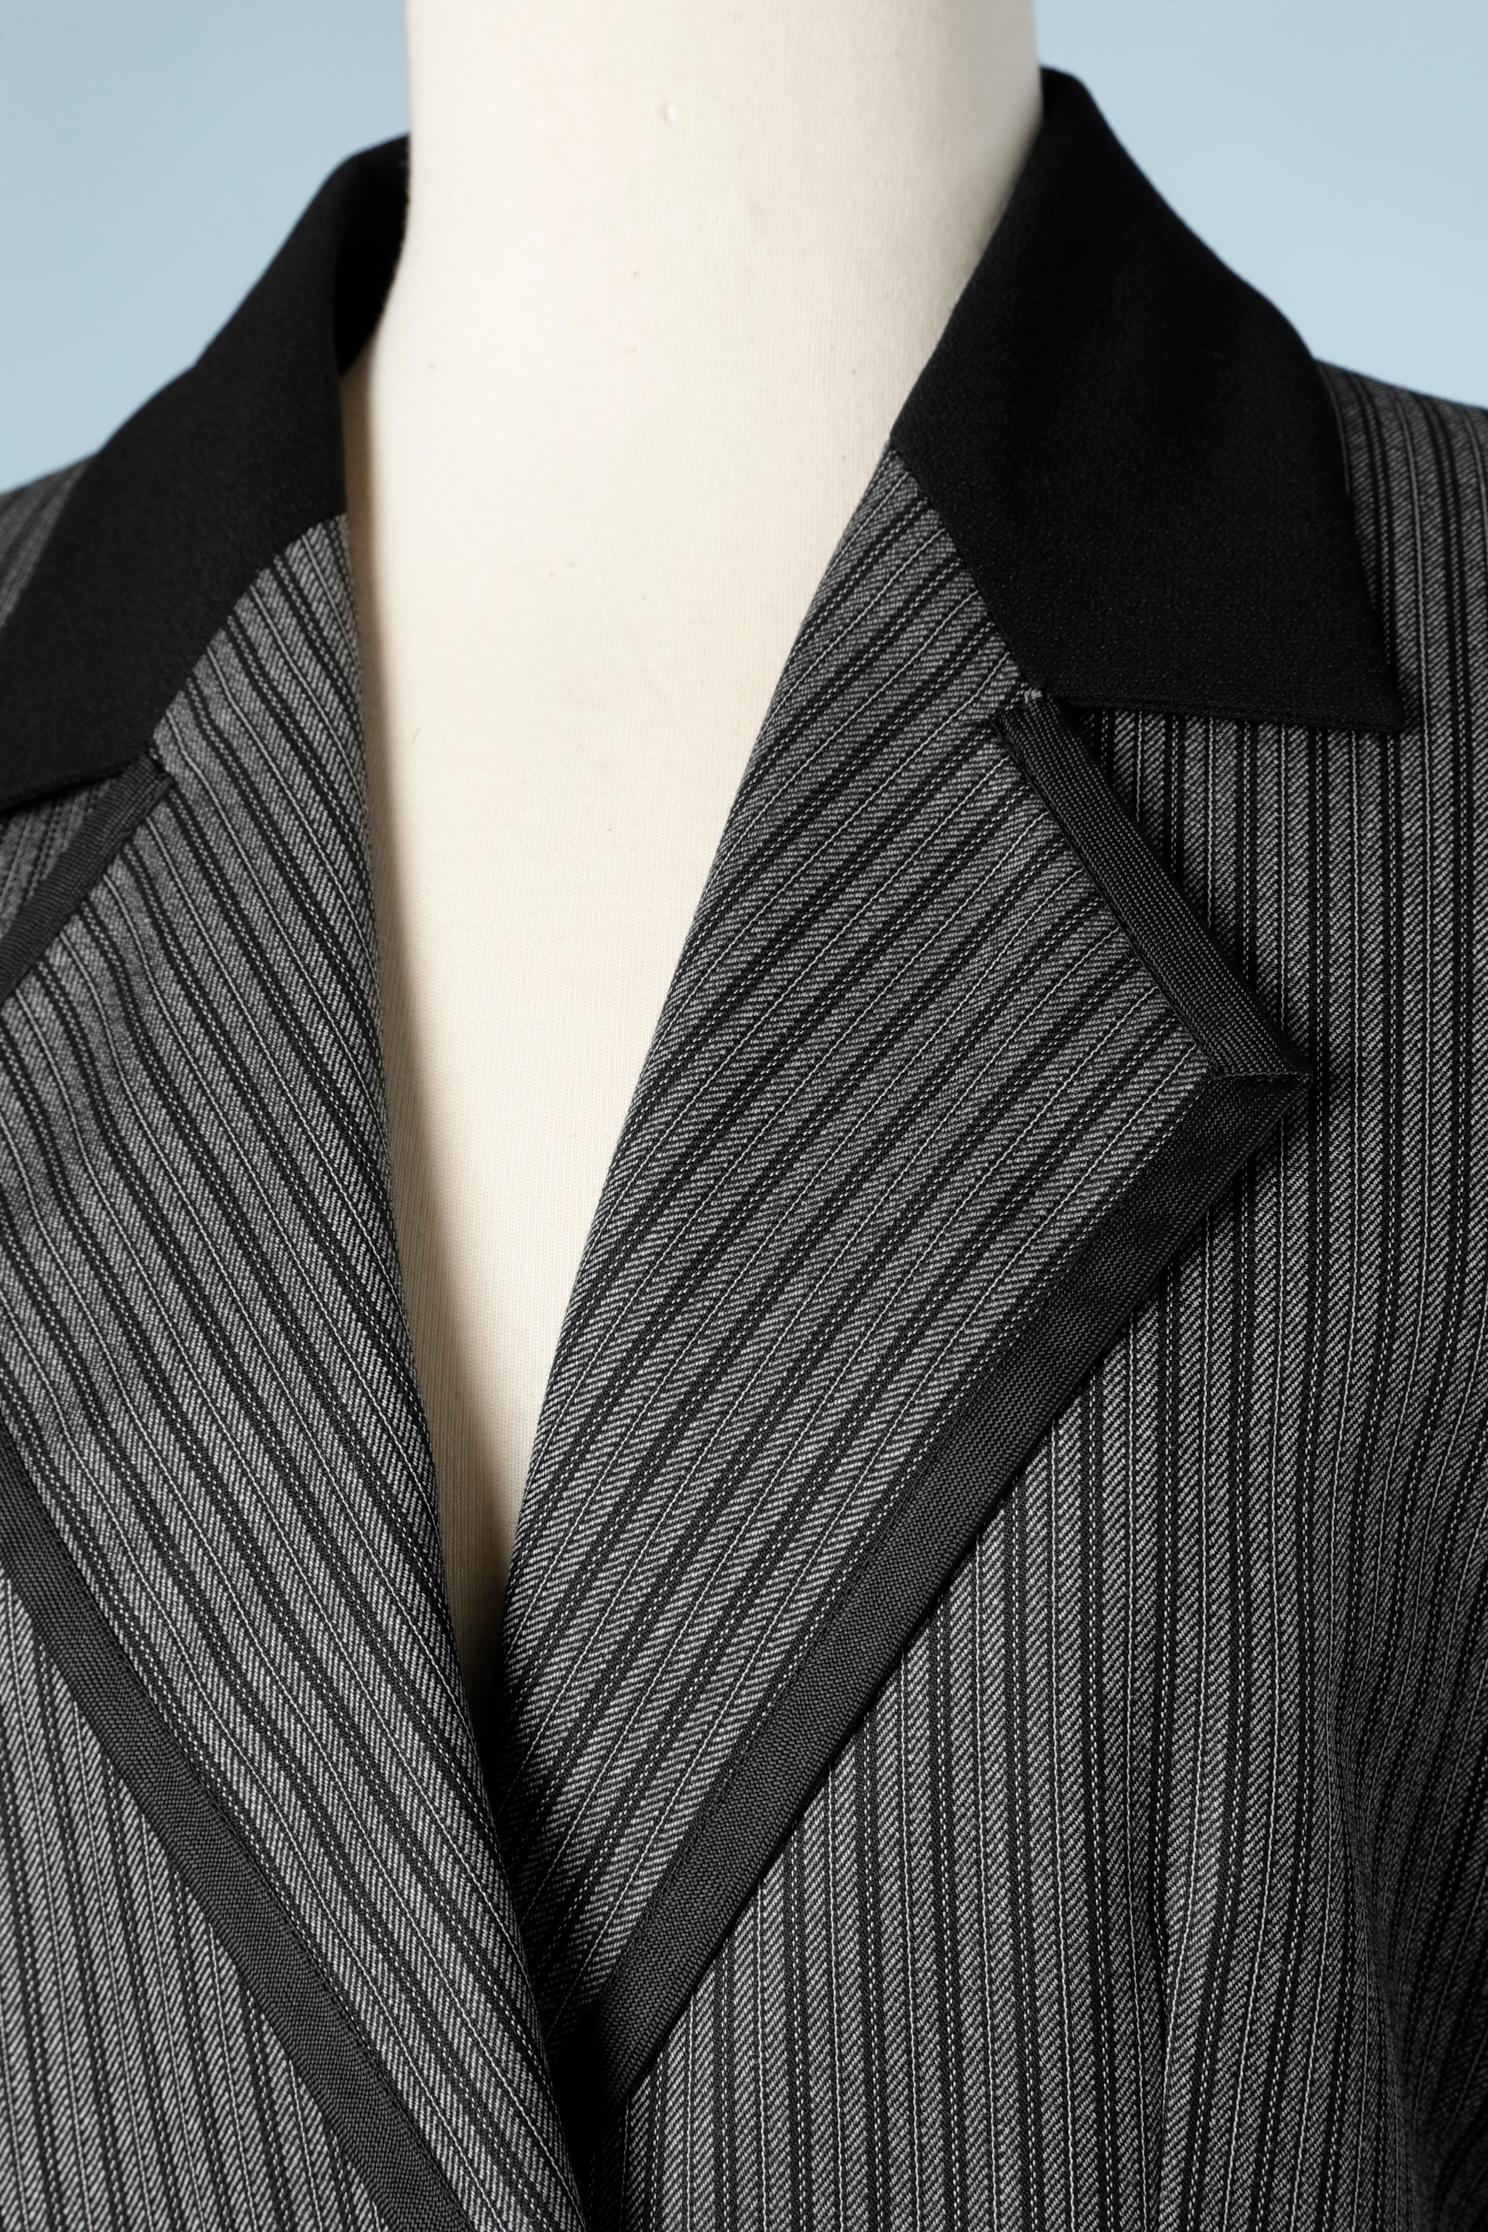 Jupe rayée en laine noire et grise - costume. Bordure passepoilée noire. Bouton supplémentaire fourni. 
TAILLE 38 (M) 